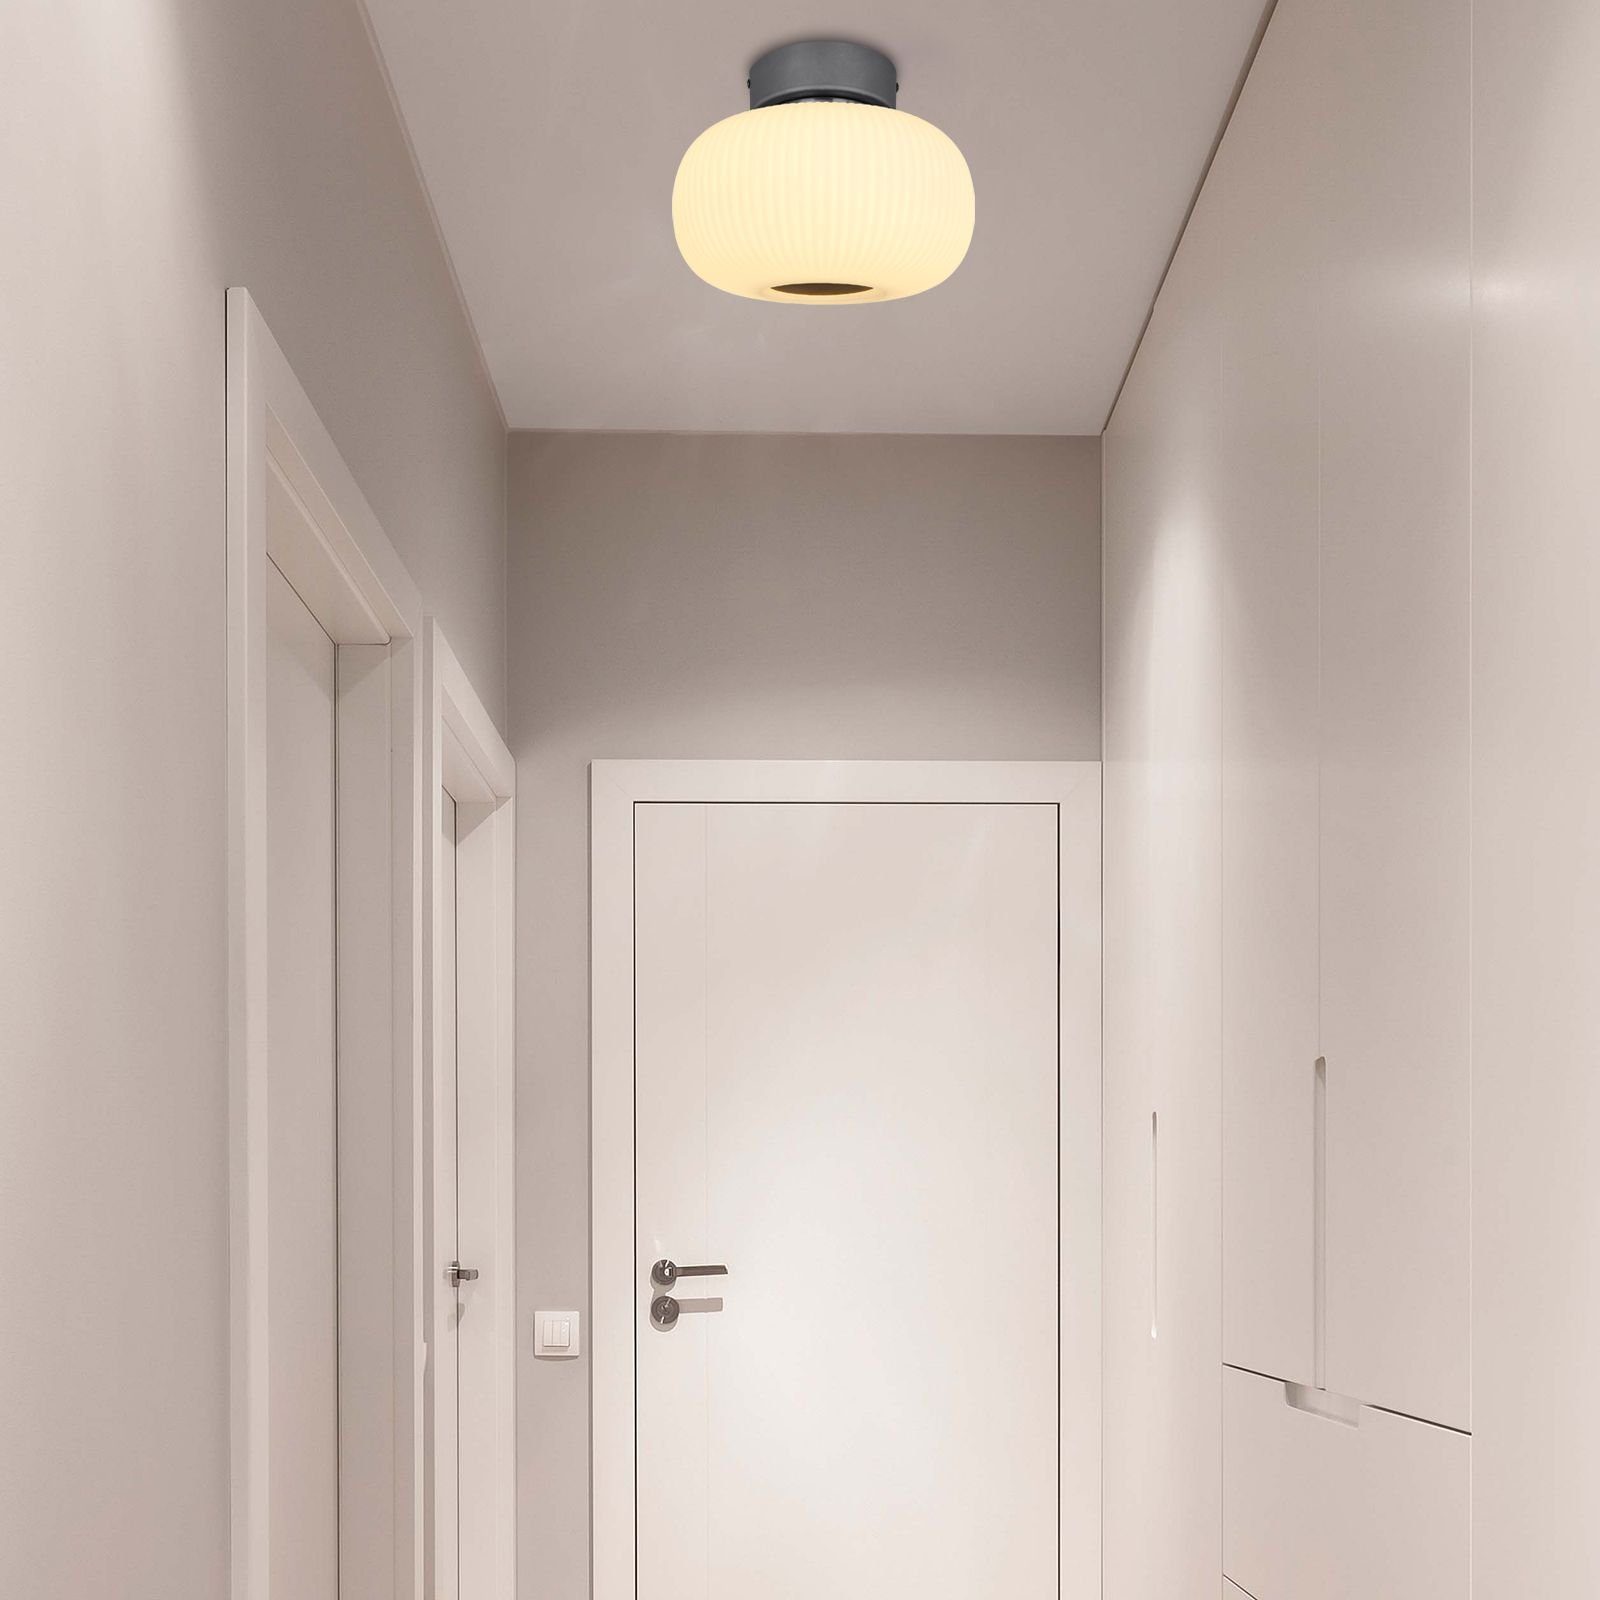 Deckenleuchte Deckenleuchte Deckenlampe Wohnzimmer dimmbar LED Schlafzimmer GLOBO Globo